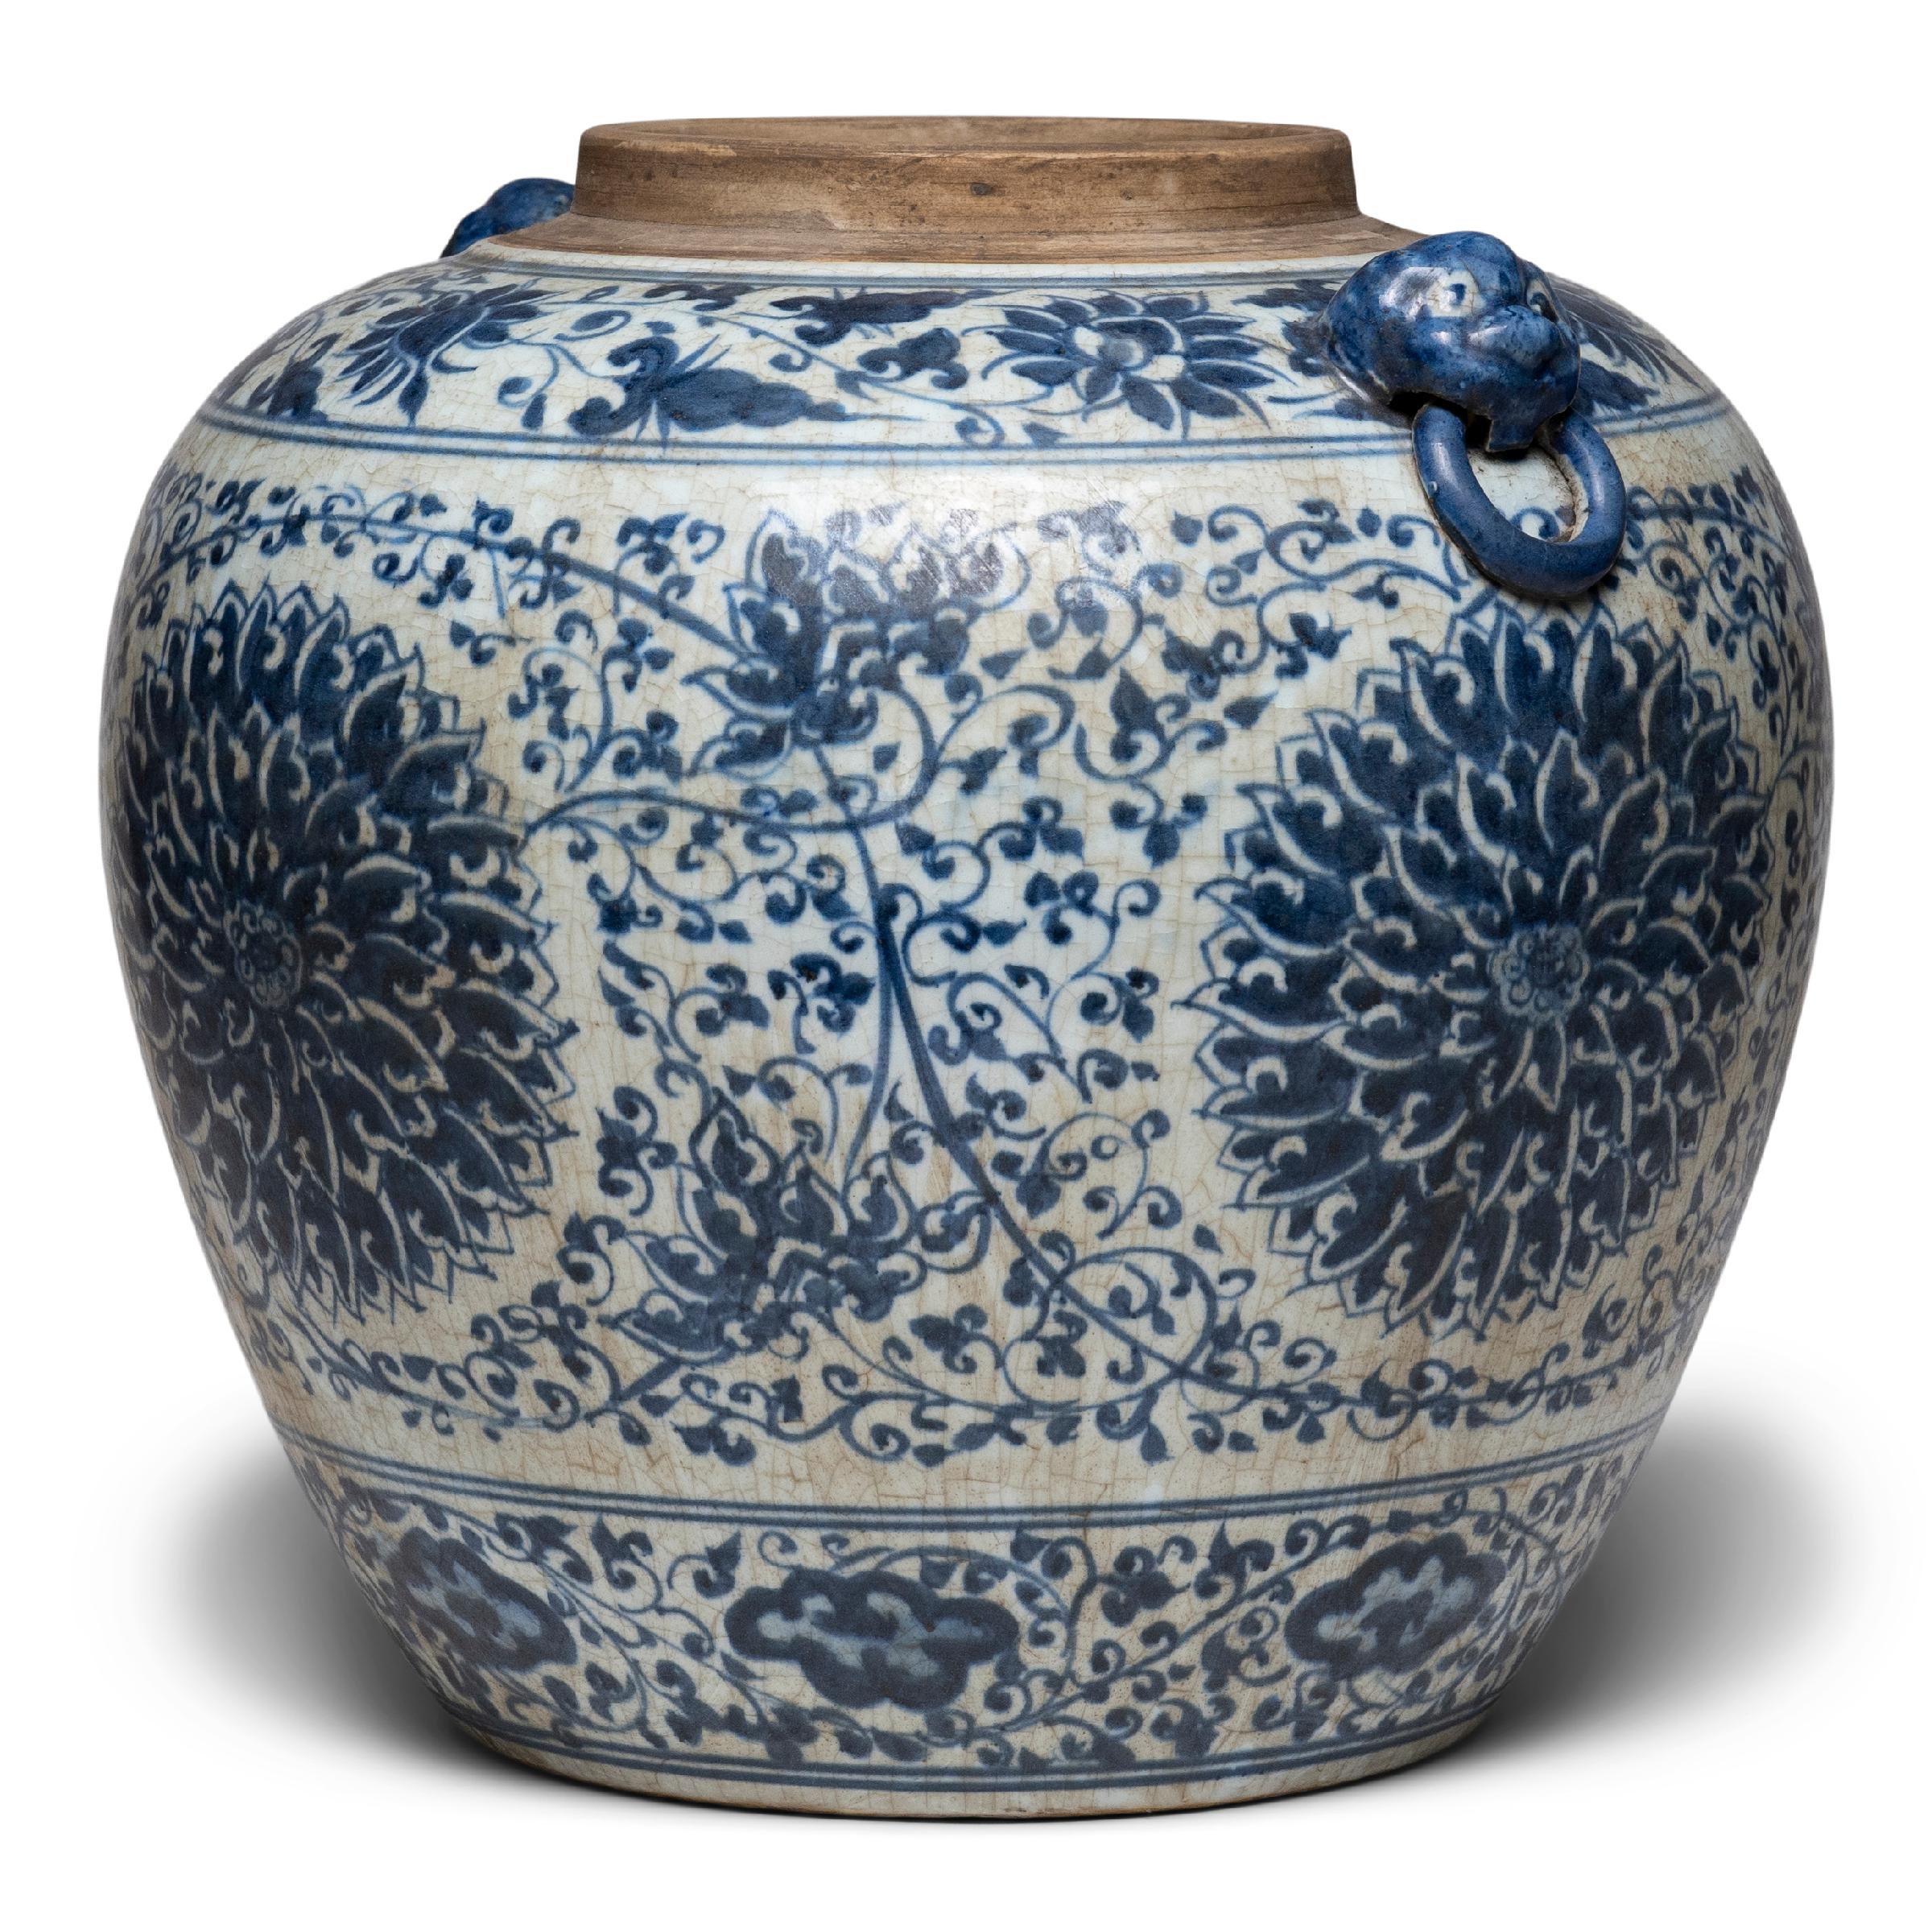 Dieses große, spitz zulaufende Ingwergefäß setzt eine jahrhundertealte Tradition chinesischer blau-weißer Porzellanwaren fort. Das mit ausdrucksstarken Pinselstrichen bemalte Gefäß ist mit verschlungenen Ranken und Blüten geschmückt, die dicht um